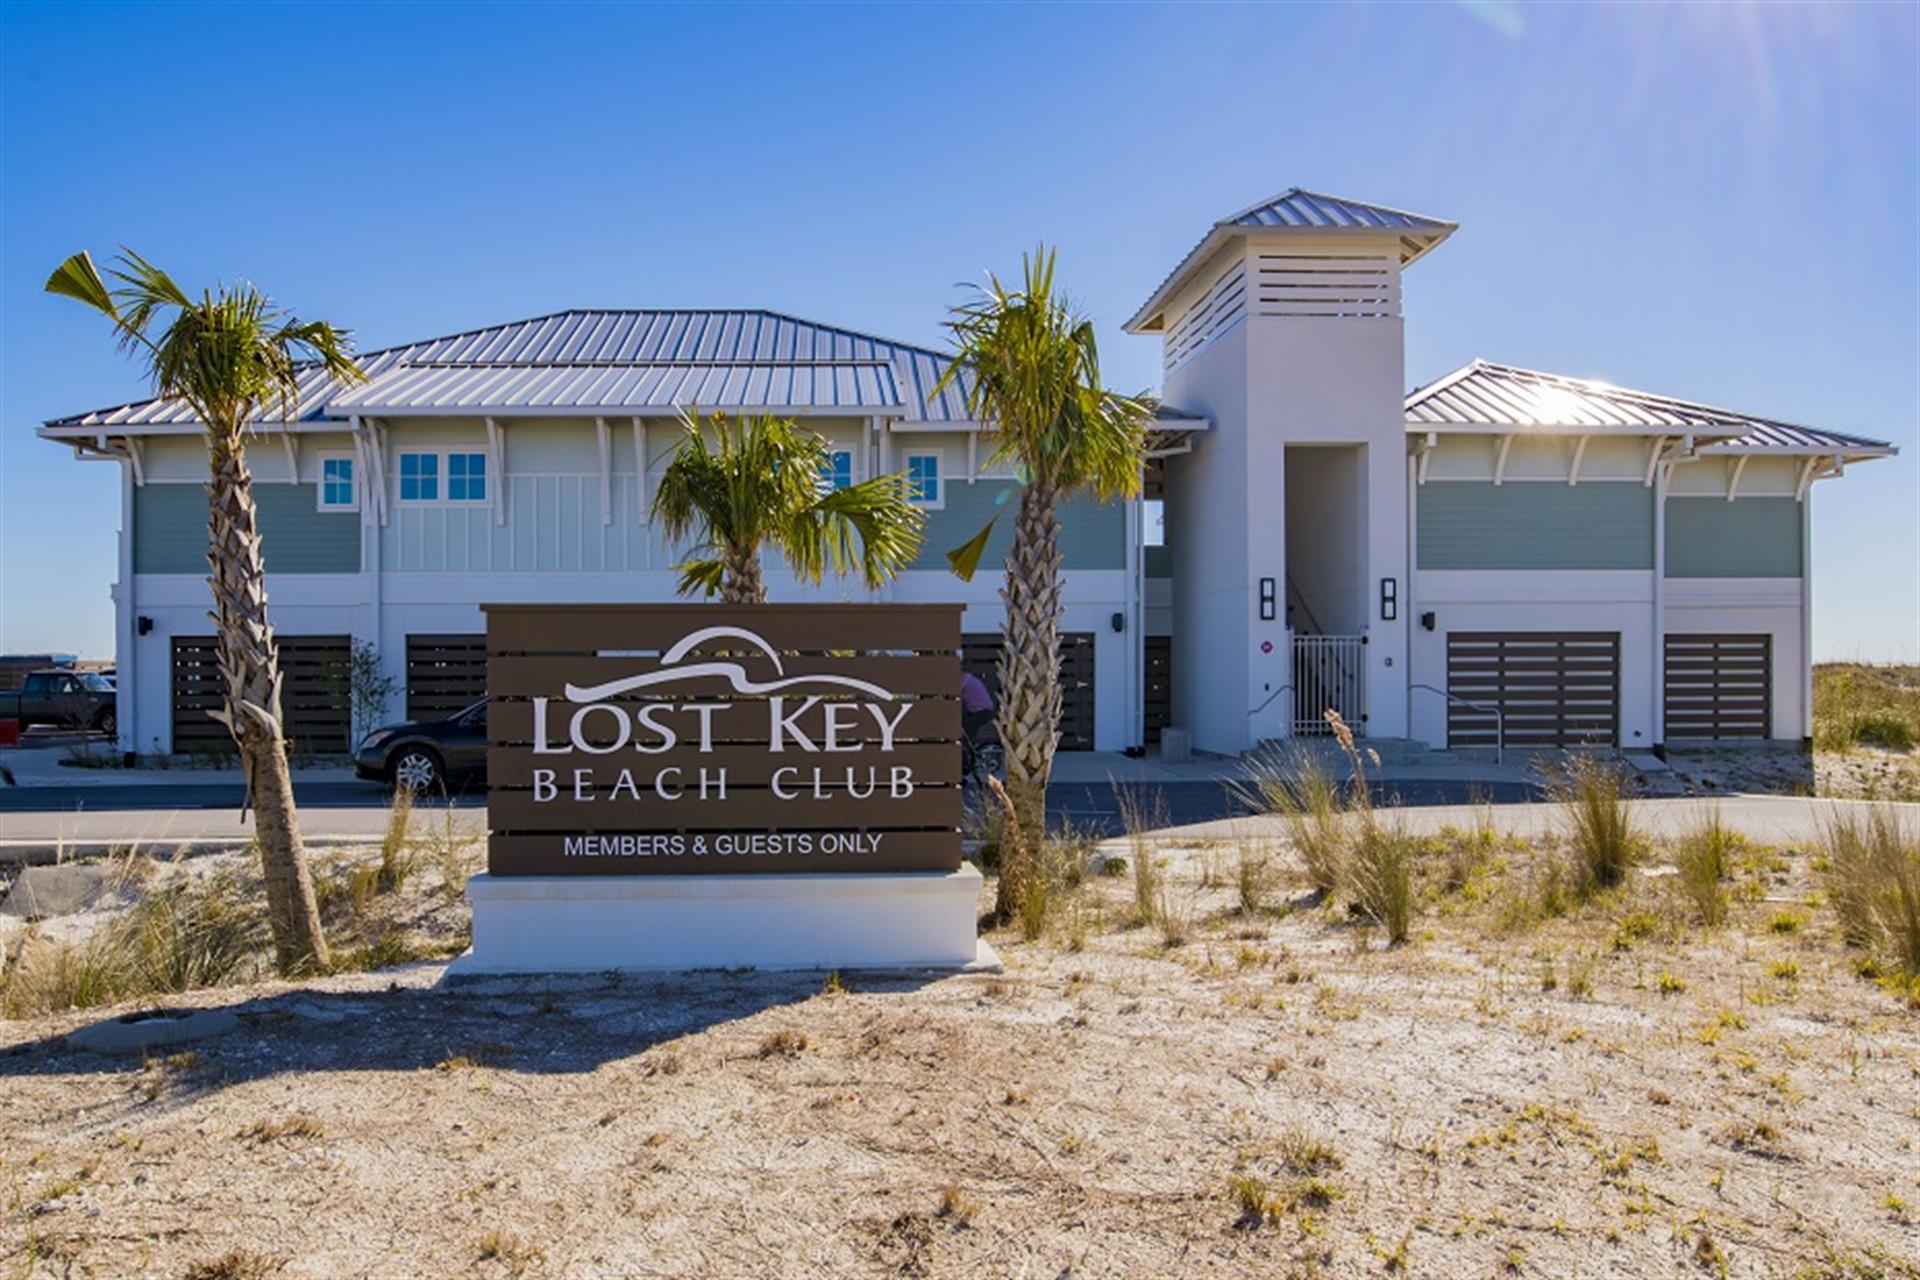 Lost key golf and beach club